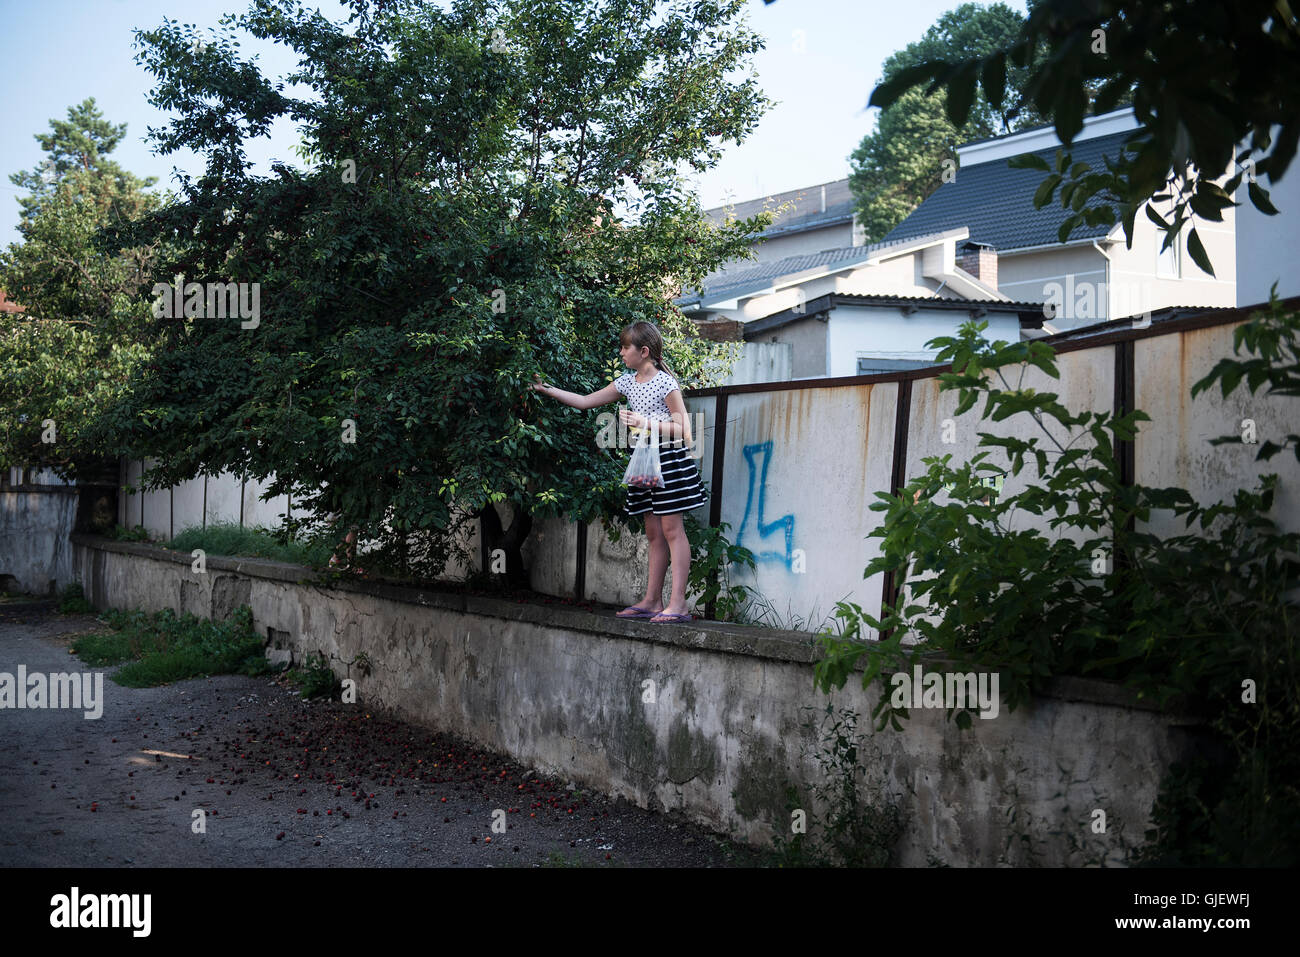 Una ragazza raccoglie le prugne da un albero presso il cortile di una casa, presso la città di a Horodenka in Ucraina occidentale Foto Stock